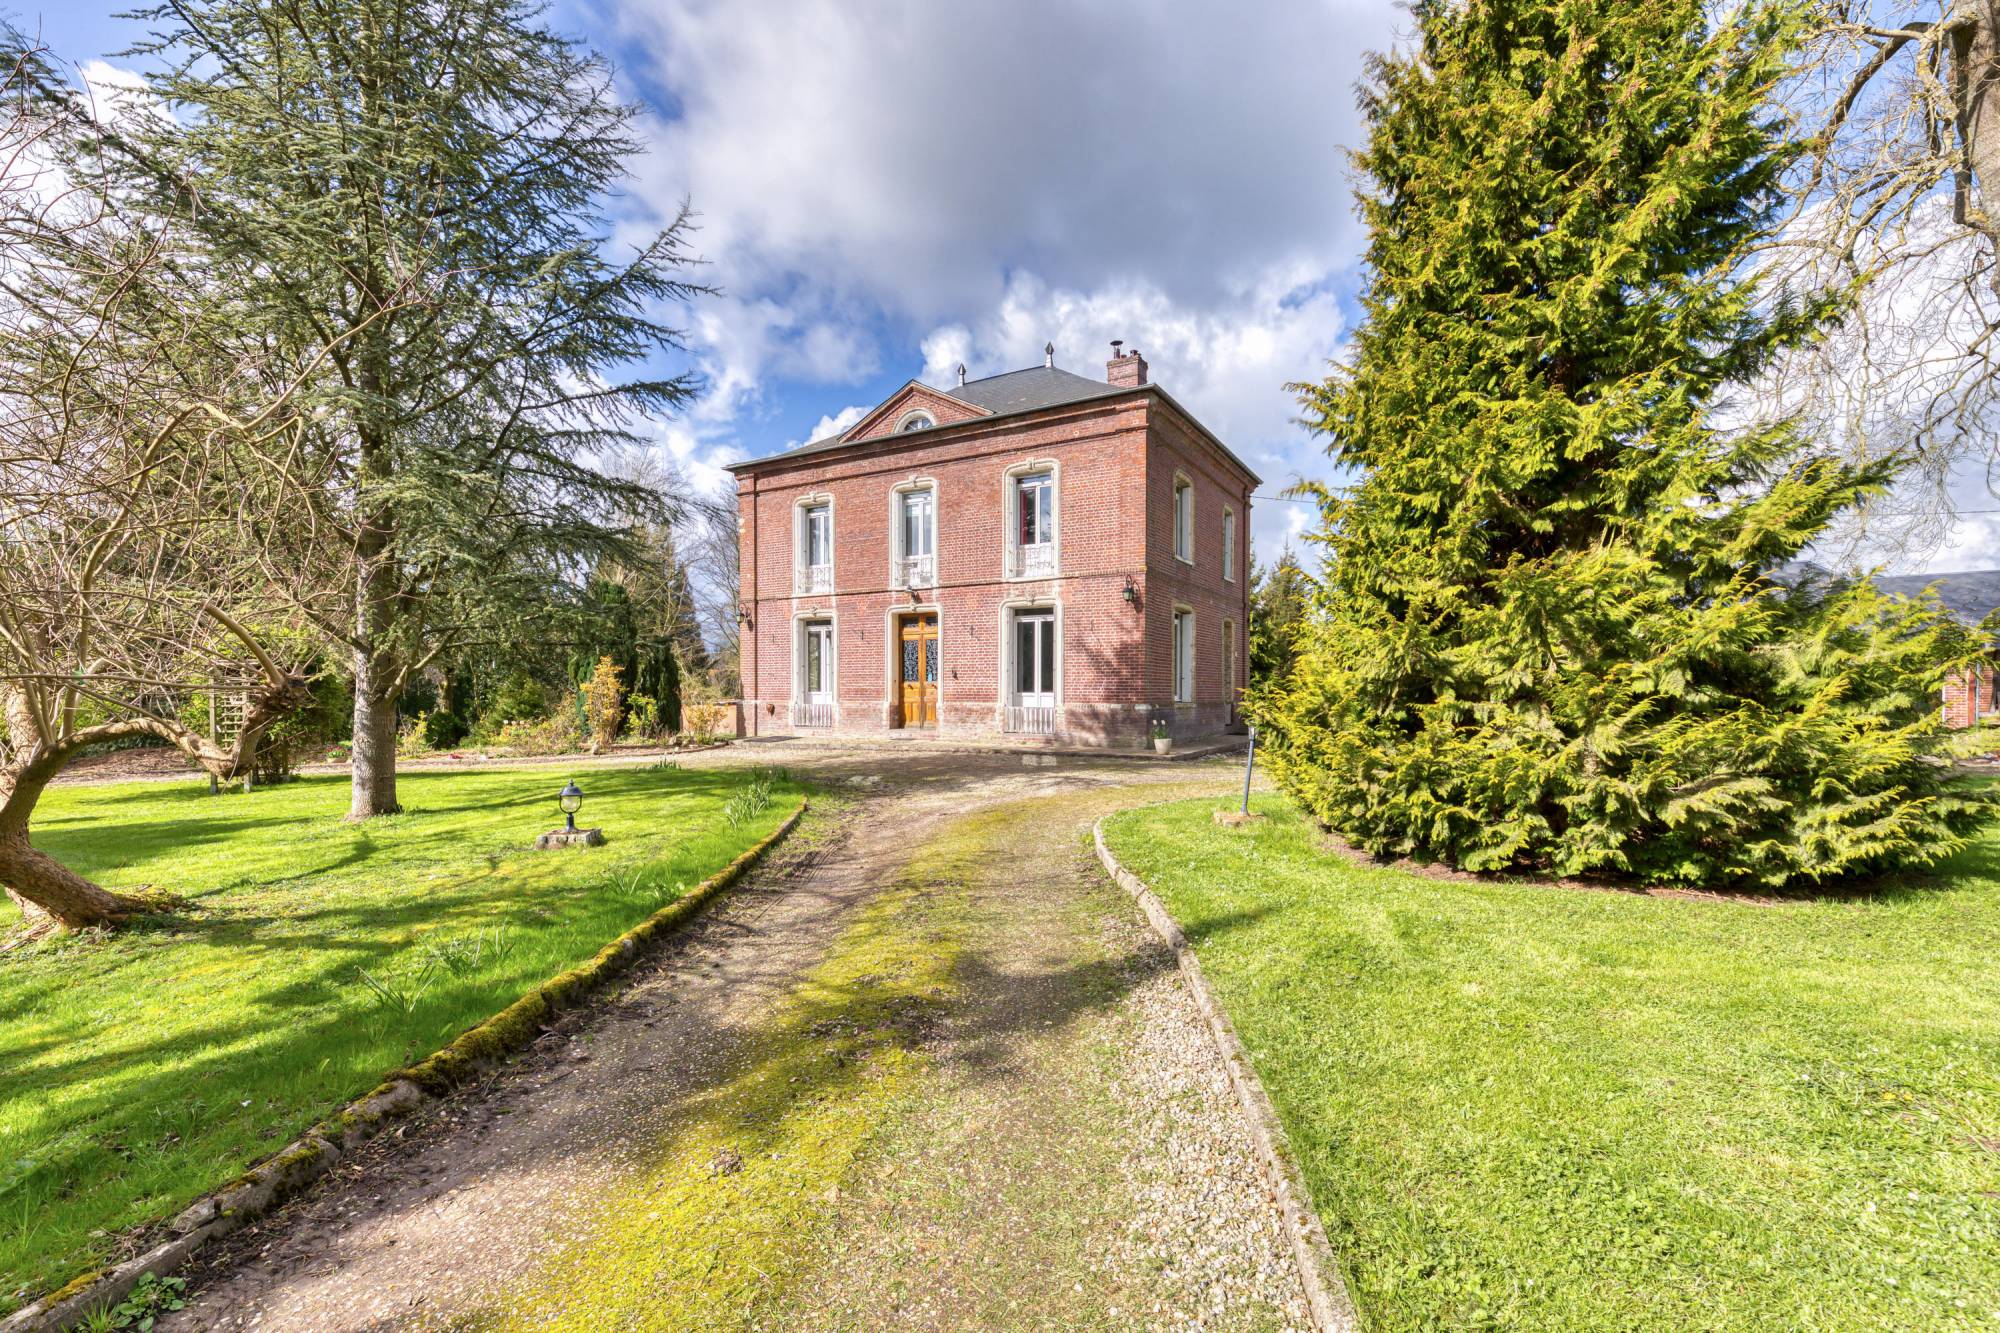 A vendre maison de maître et dépendances sur parc d'1 hectare : une opportunité unique dans le Pays de Bray.